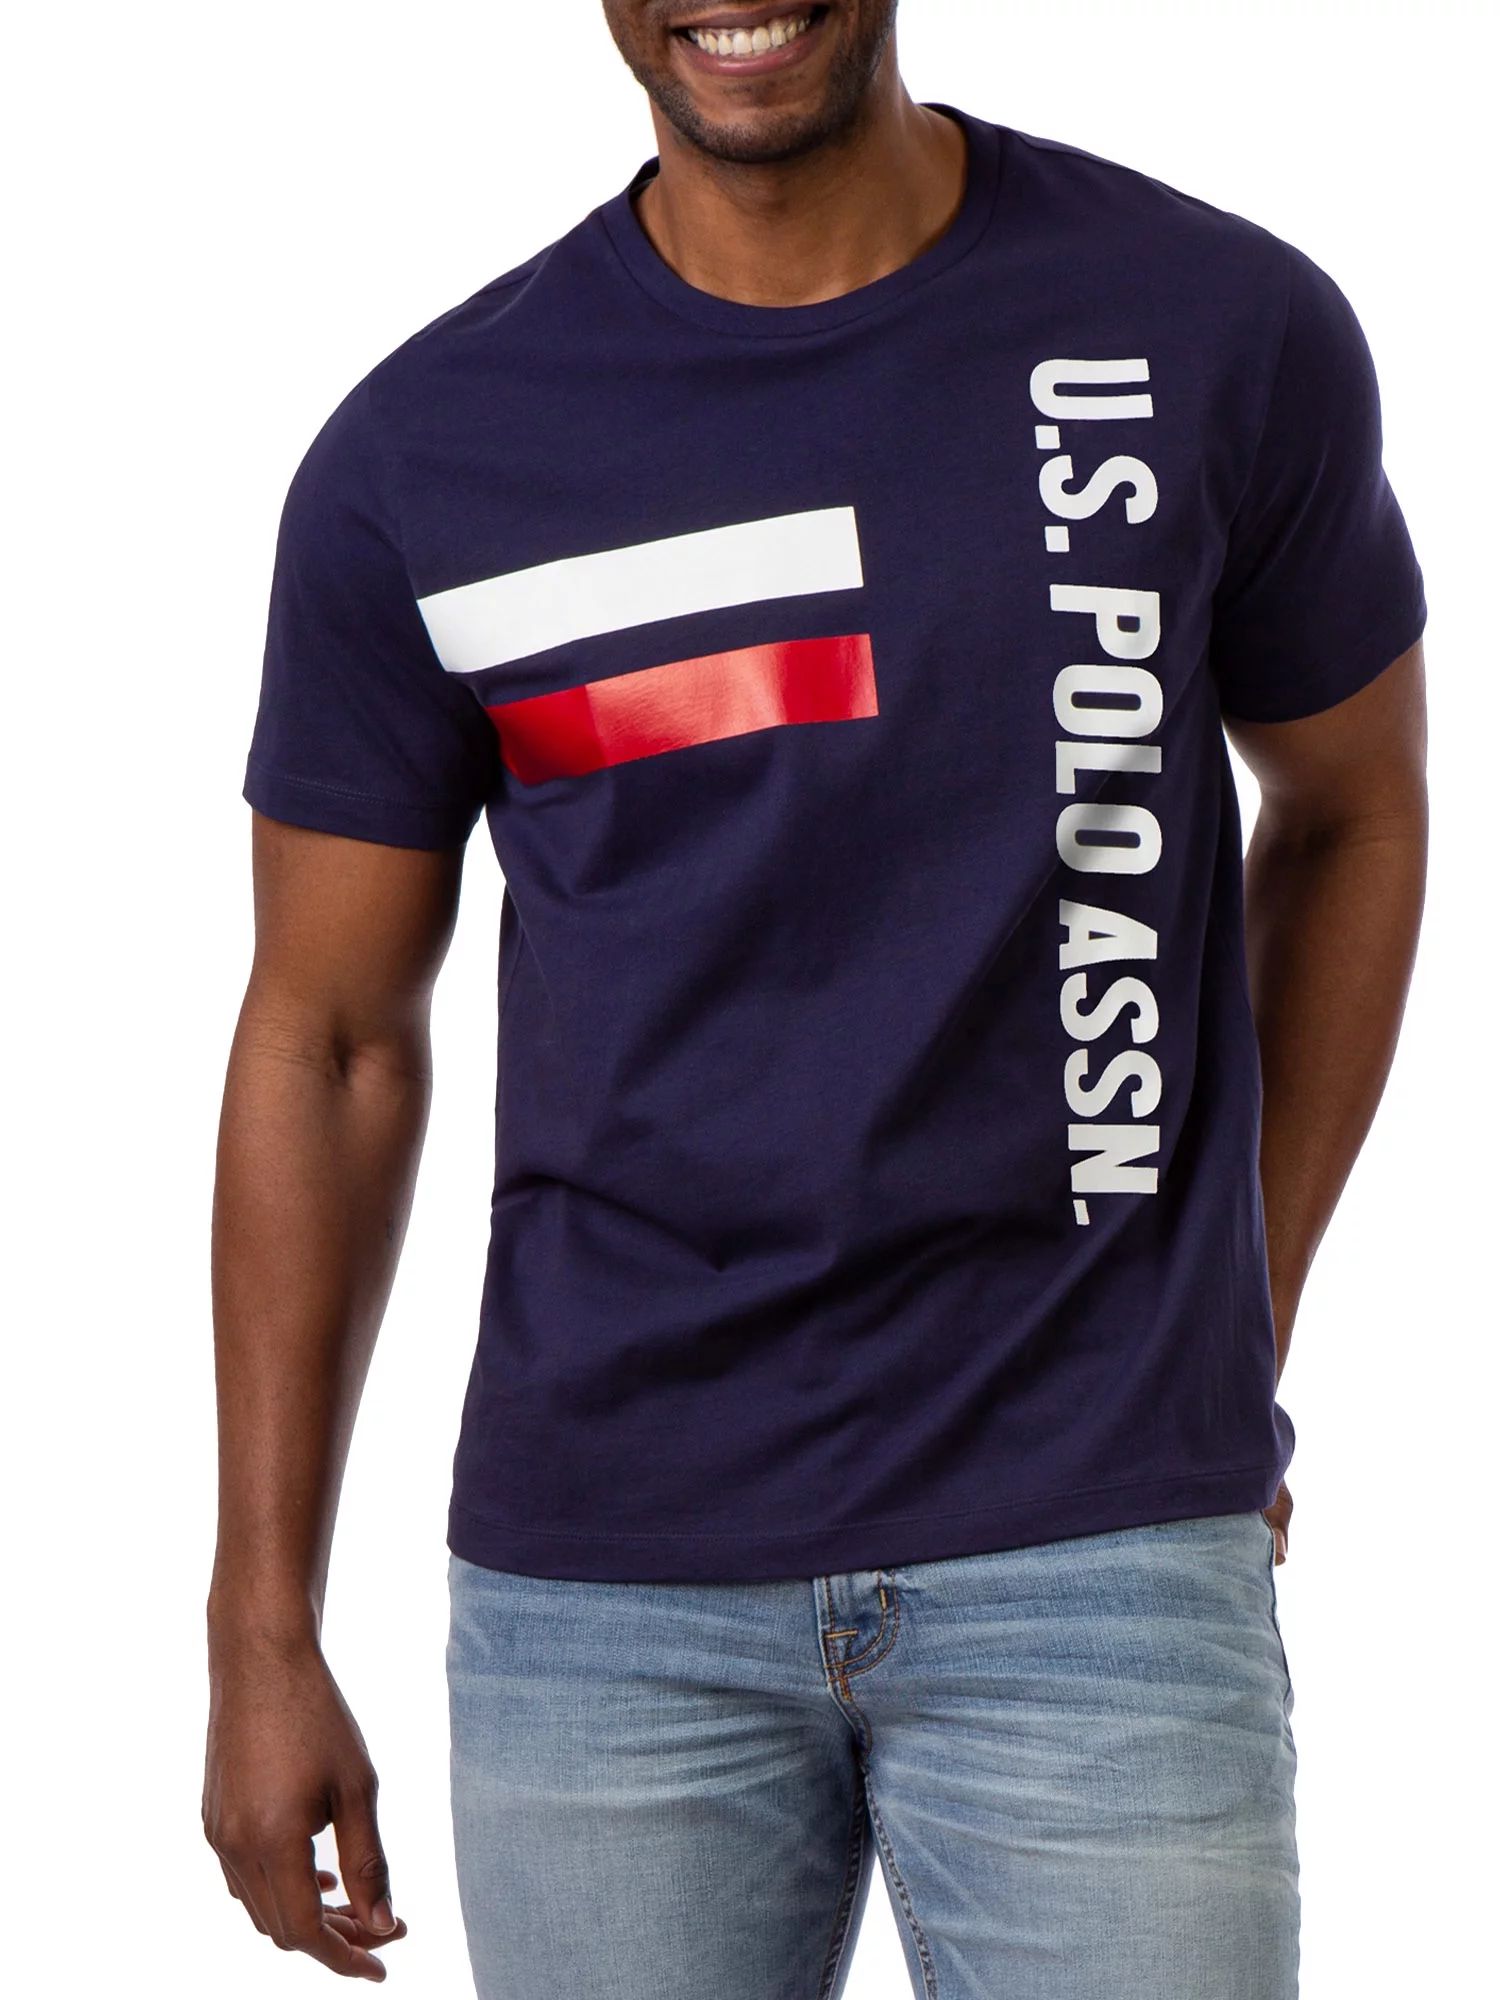 U.S. Polo Assn. Men's Graphic T-Shirt - Walmart.com | Walmart (US)